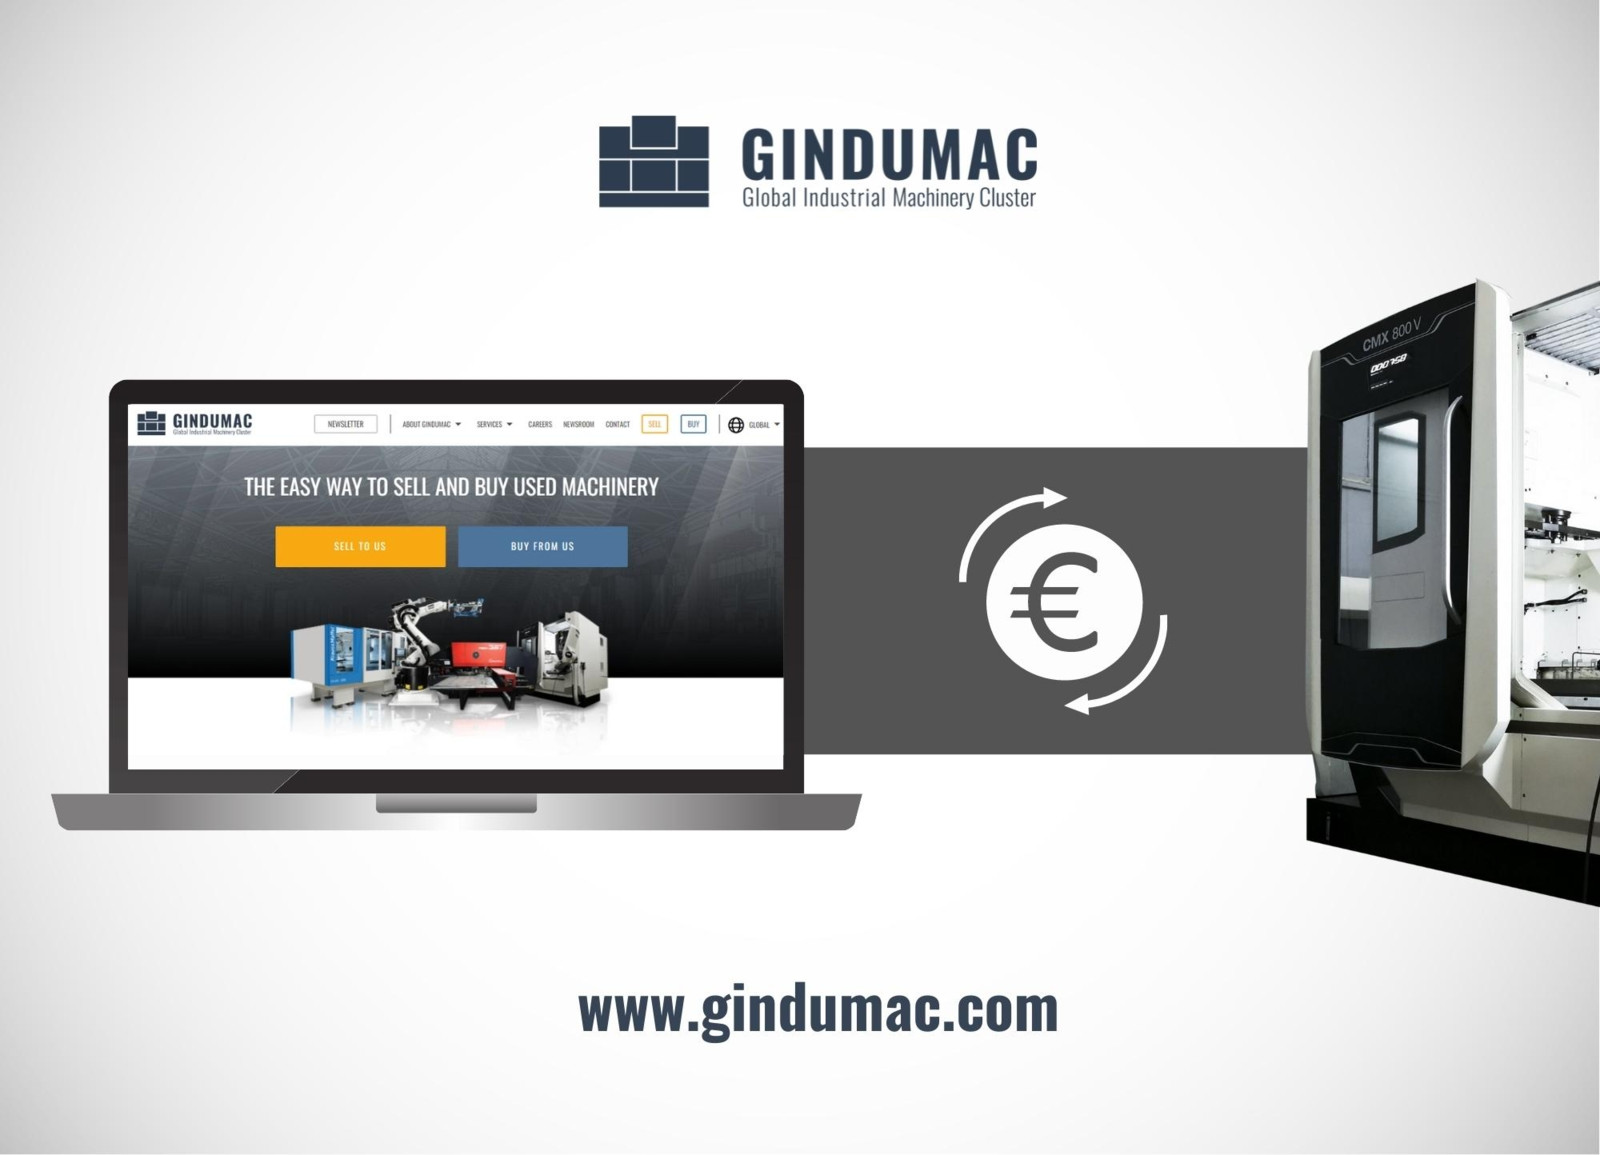 Gindumac, erstmalig als Aussteller auf der AMB dabei, bietet Zerspanern eine kostenfreie Marktwertbestimmung ihrer Werkzeugmaschinen. 